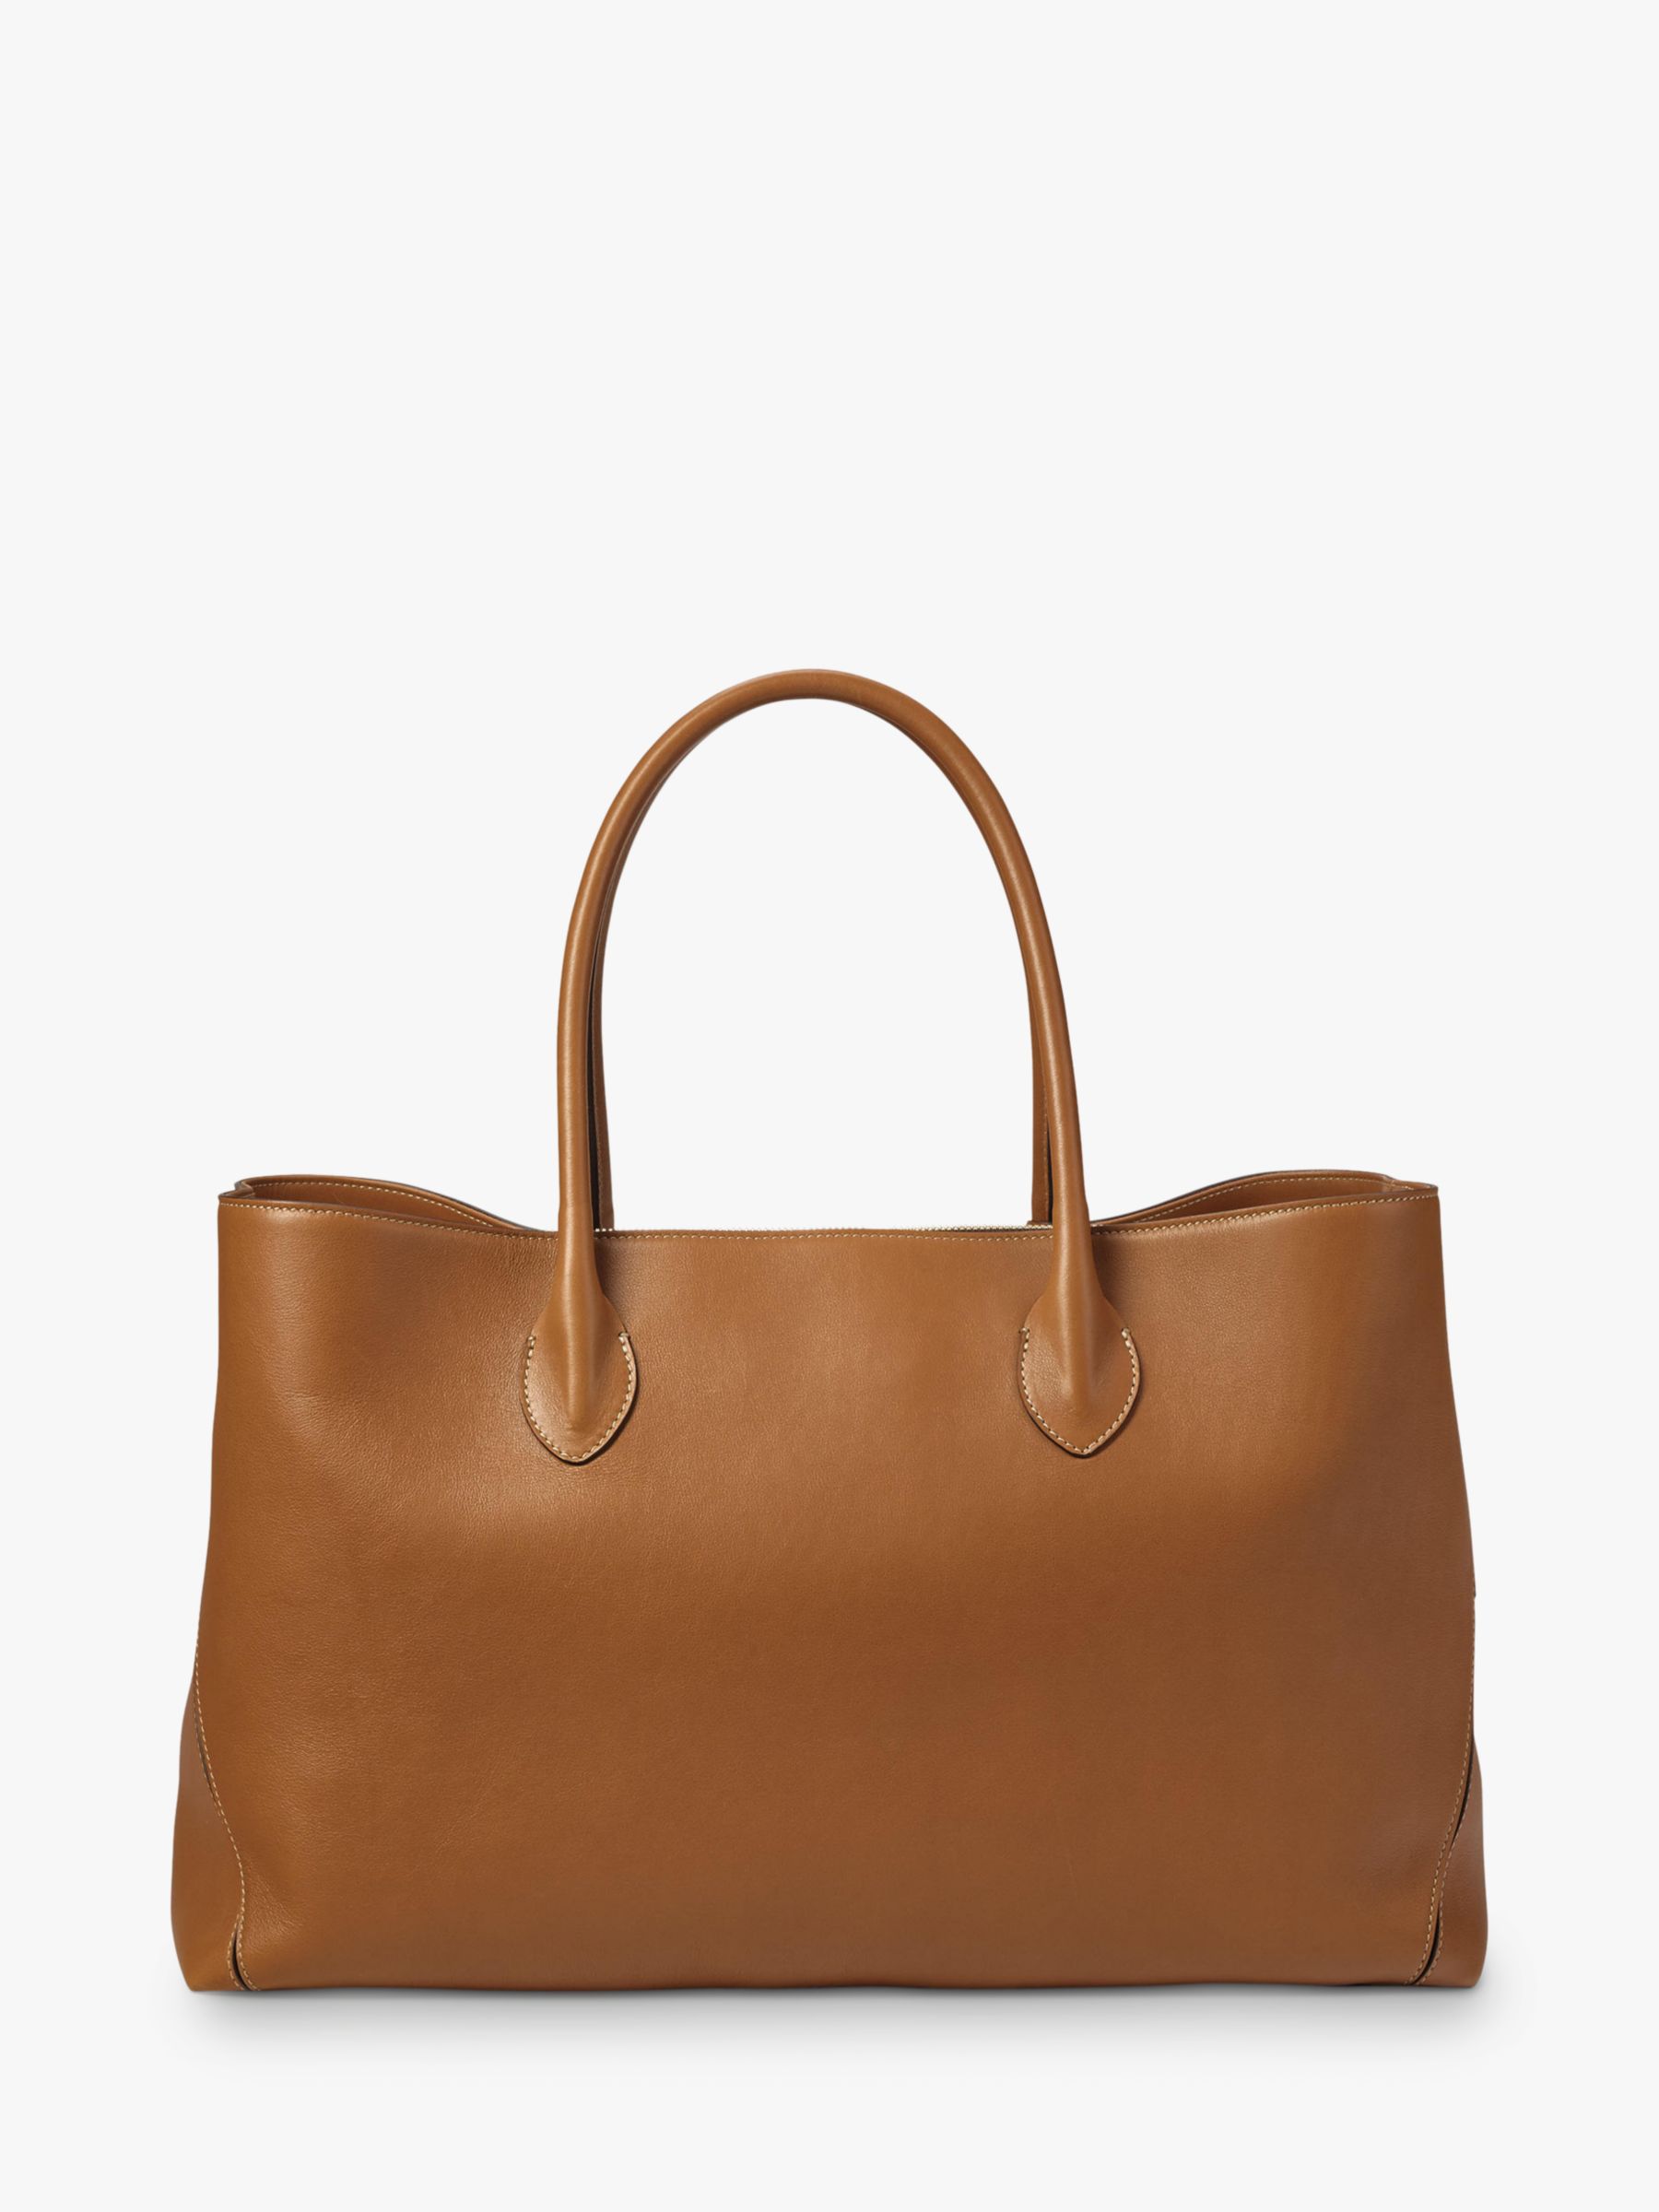 Aspinal of London Ladies Brown Leather Tan Tote Bag